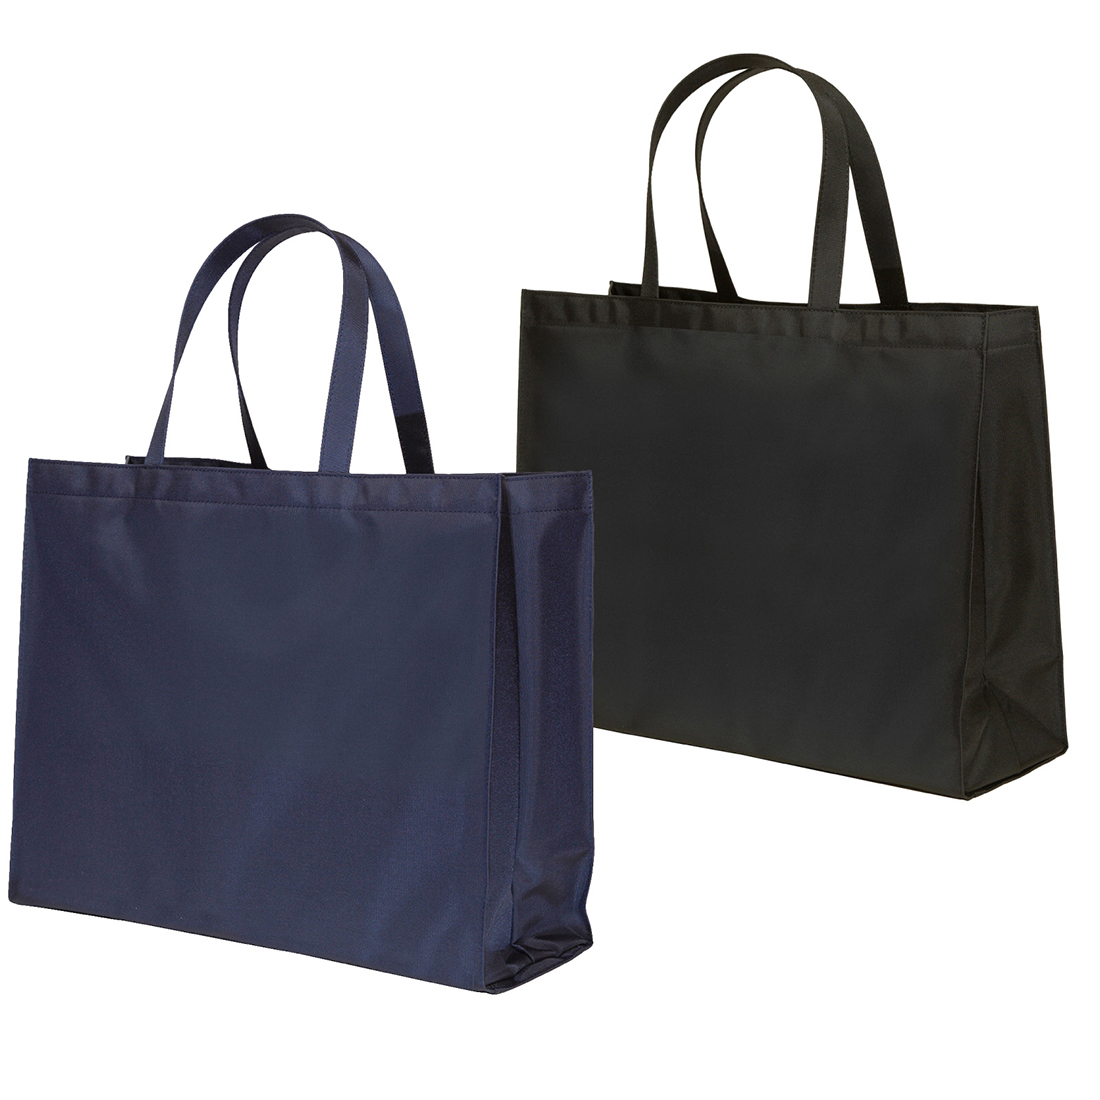 お受験バッグ 完全日本製 横型 完全自立型サブバッグ お父様も使える